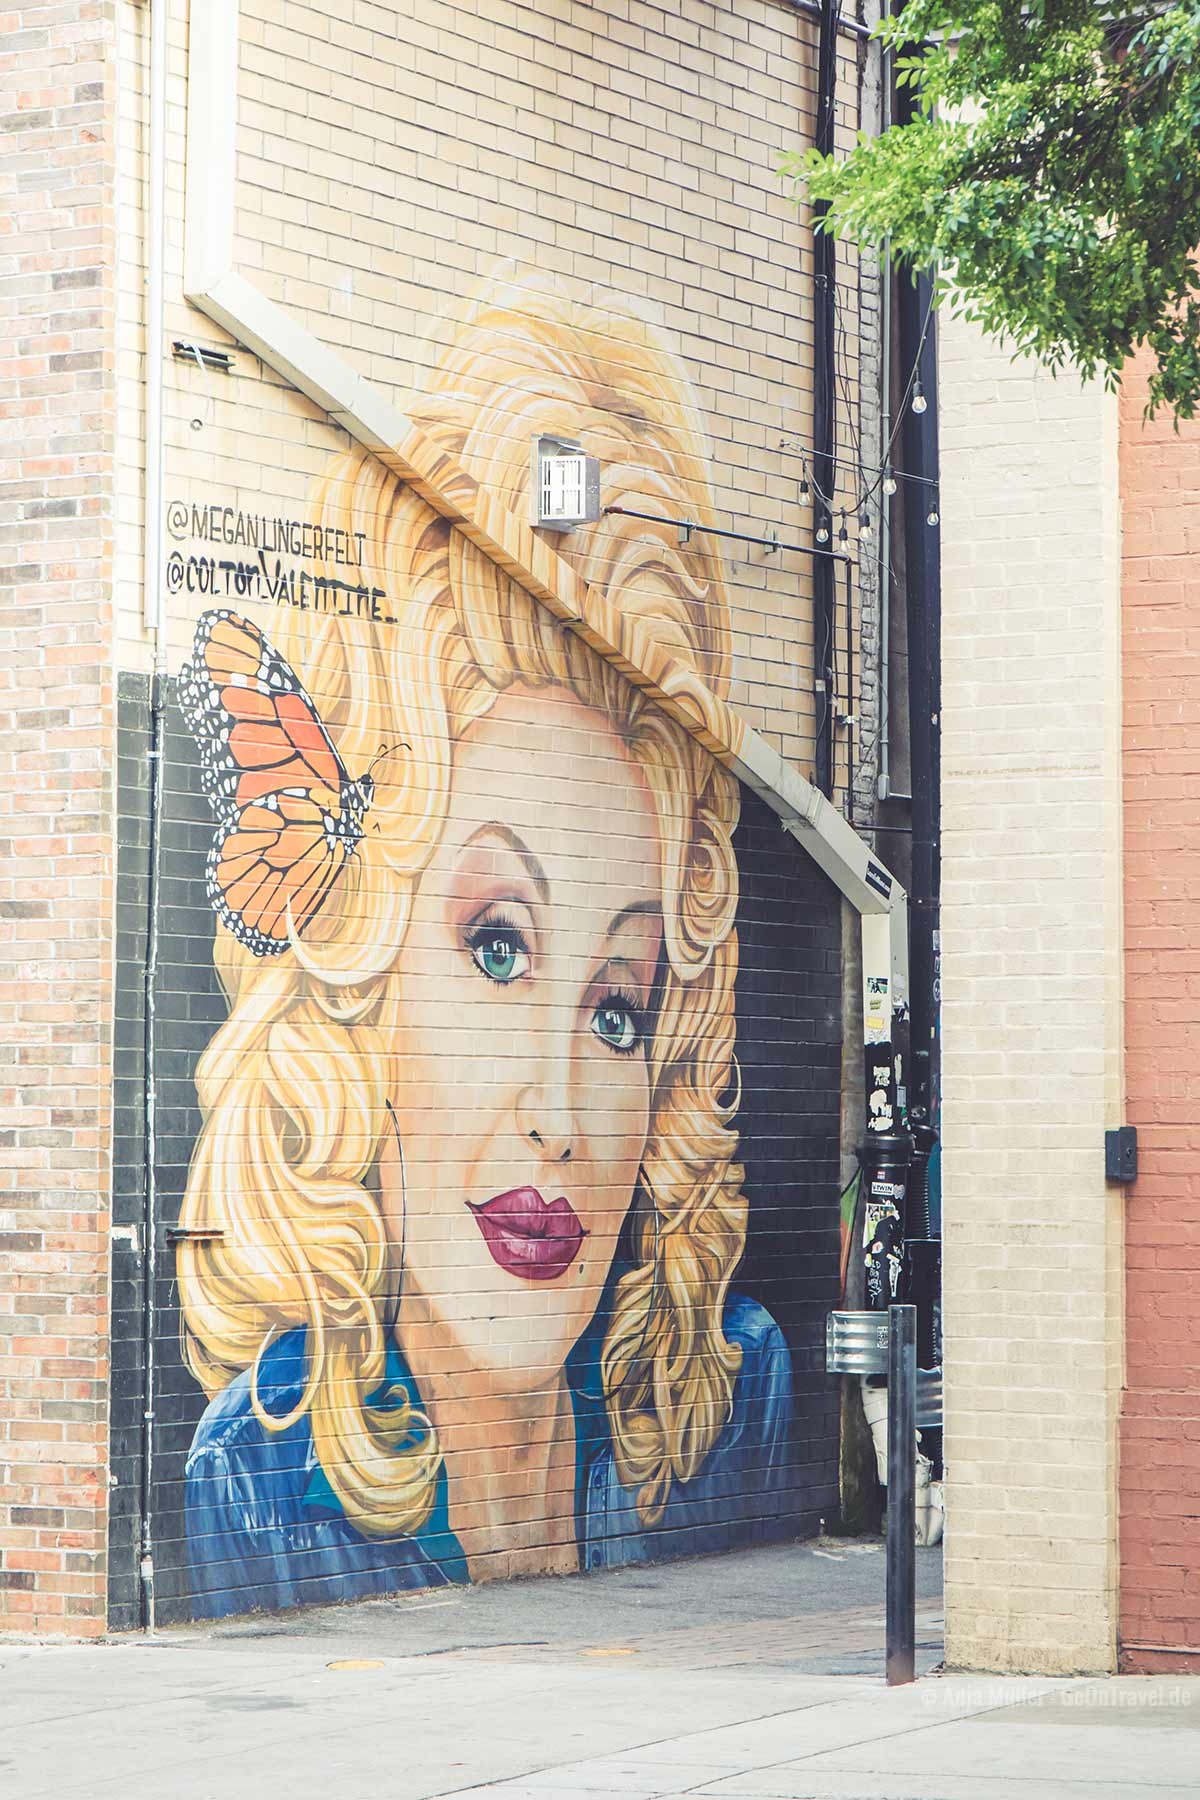 Ein ekannteste Mural in Knoxville ist mit Dolly Parton